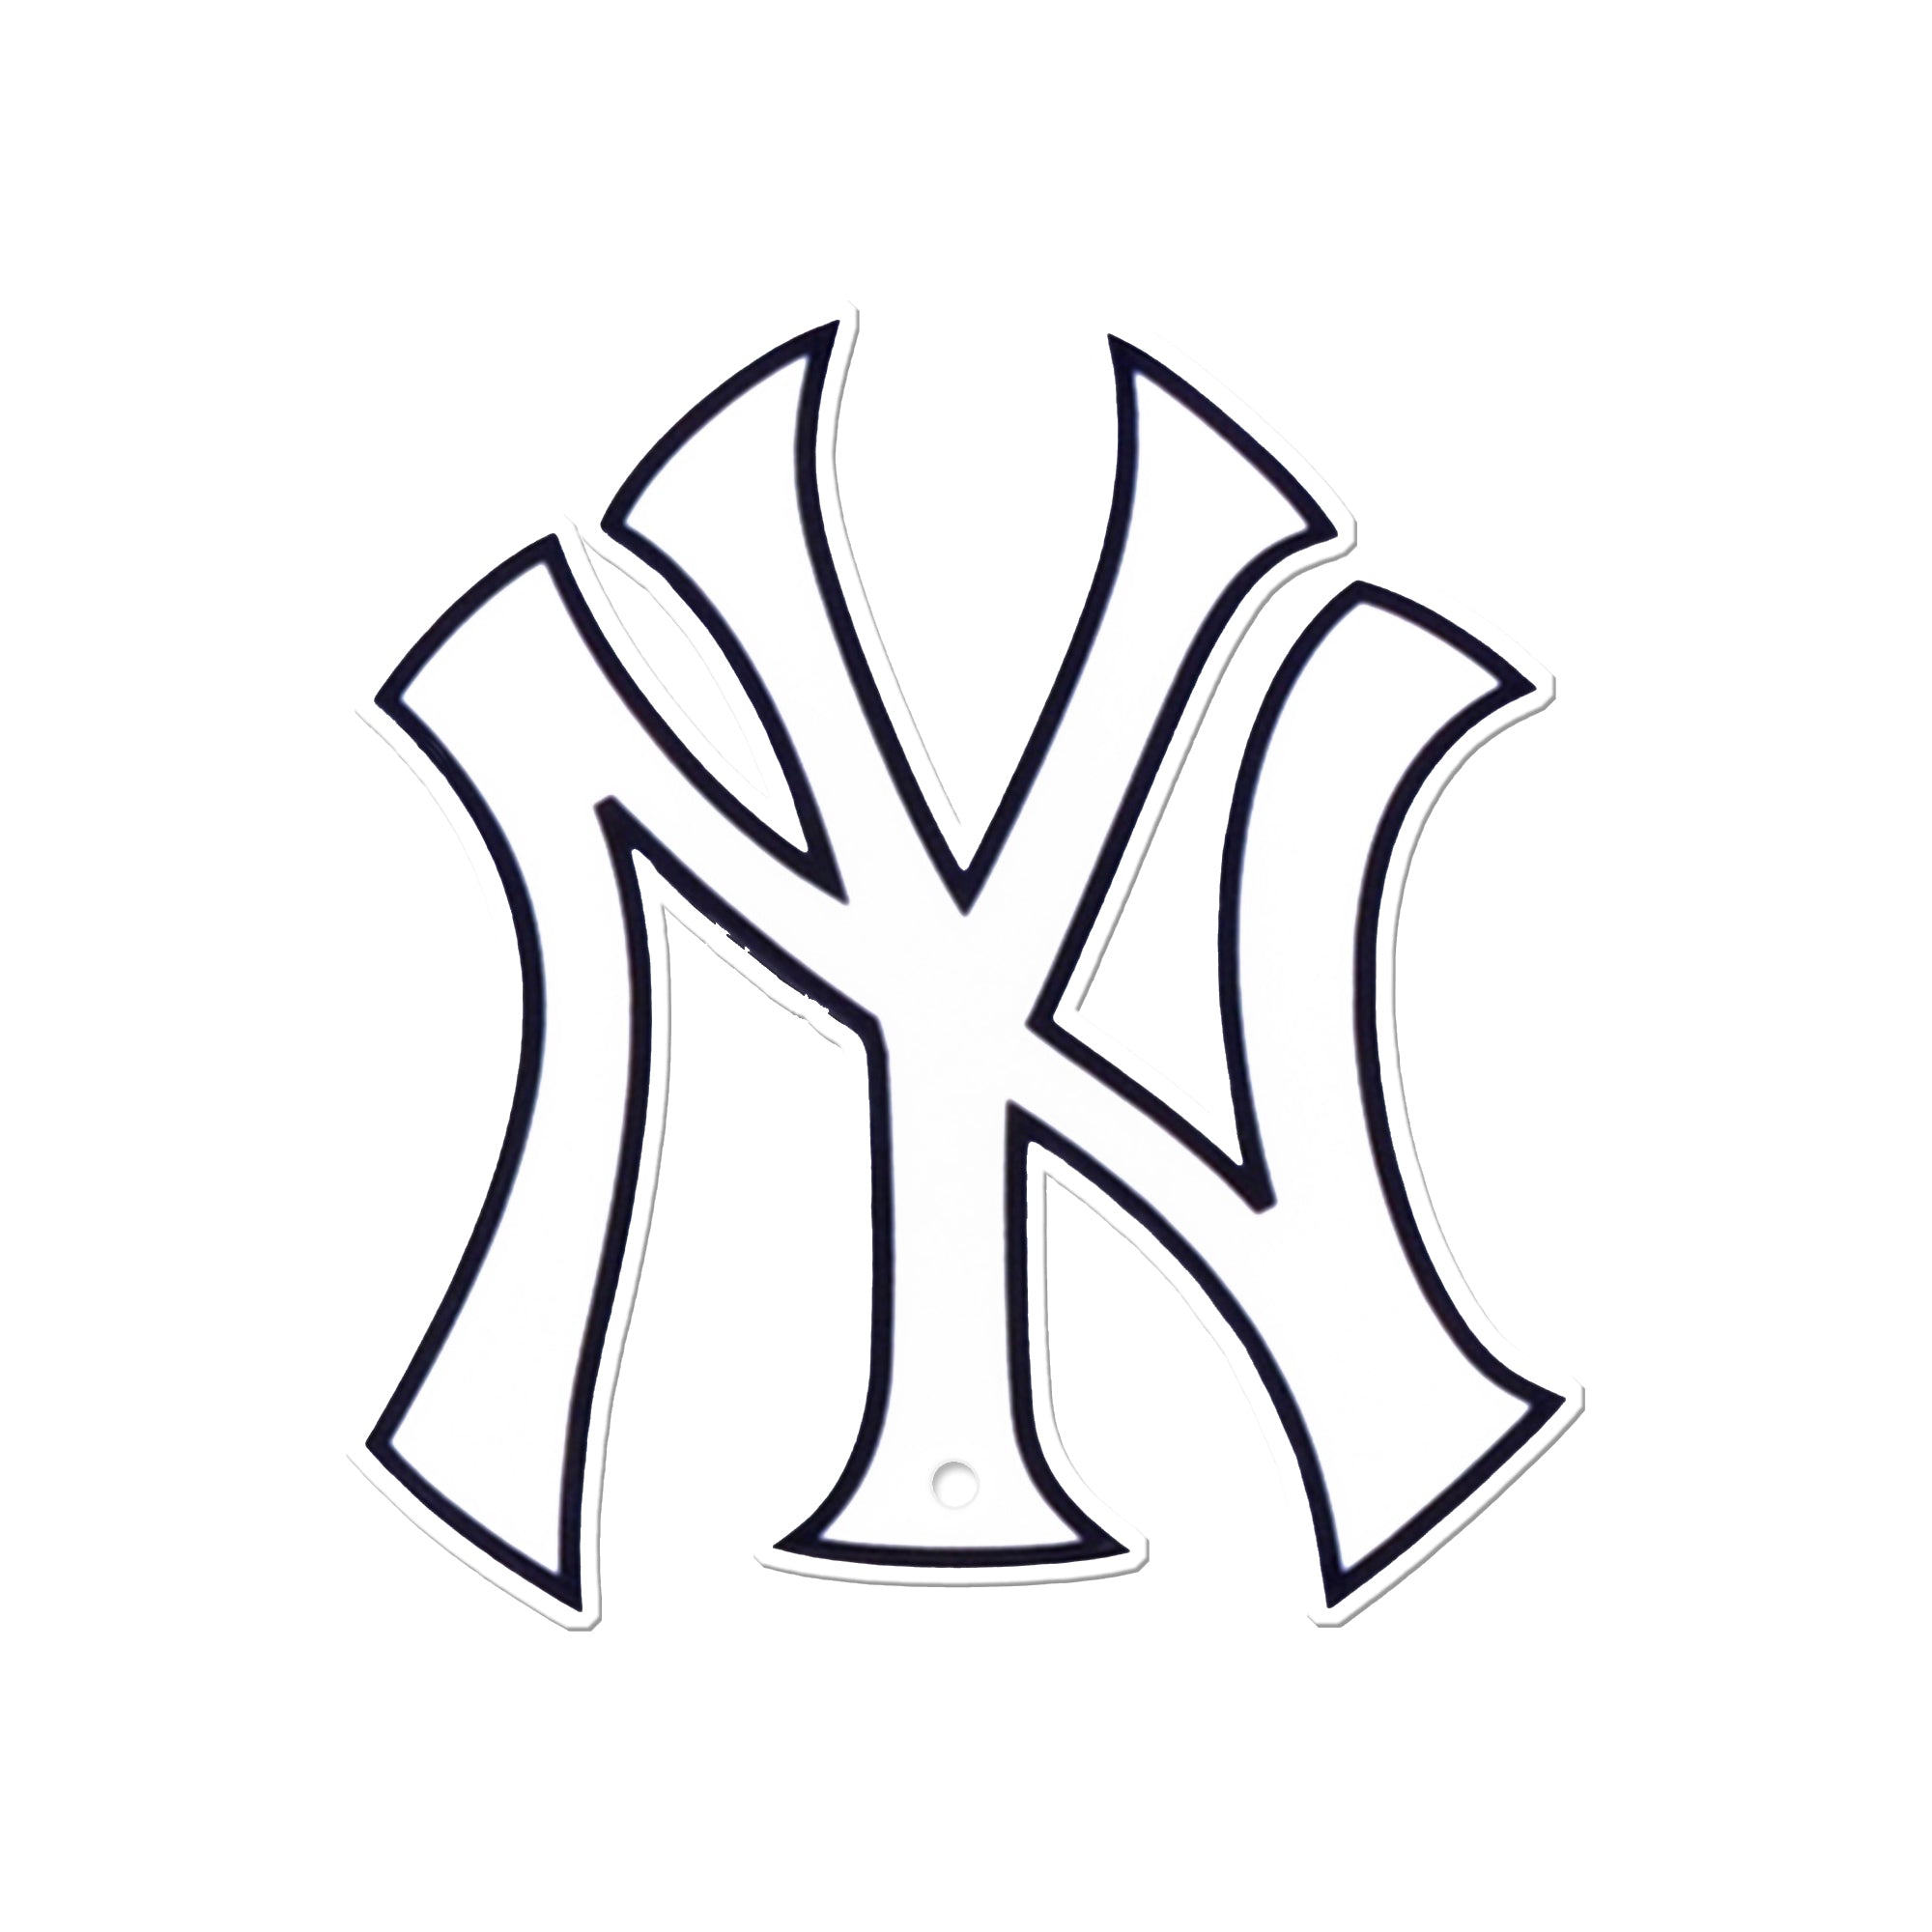 Ny Yankees Colors 